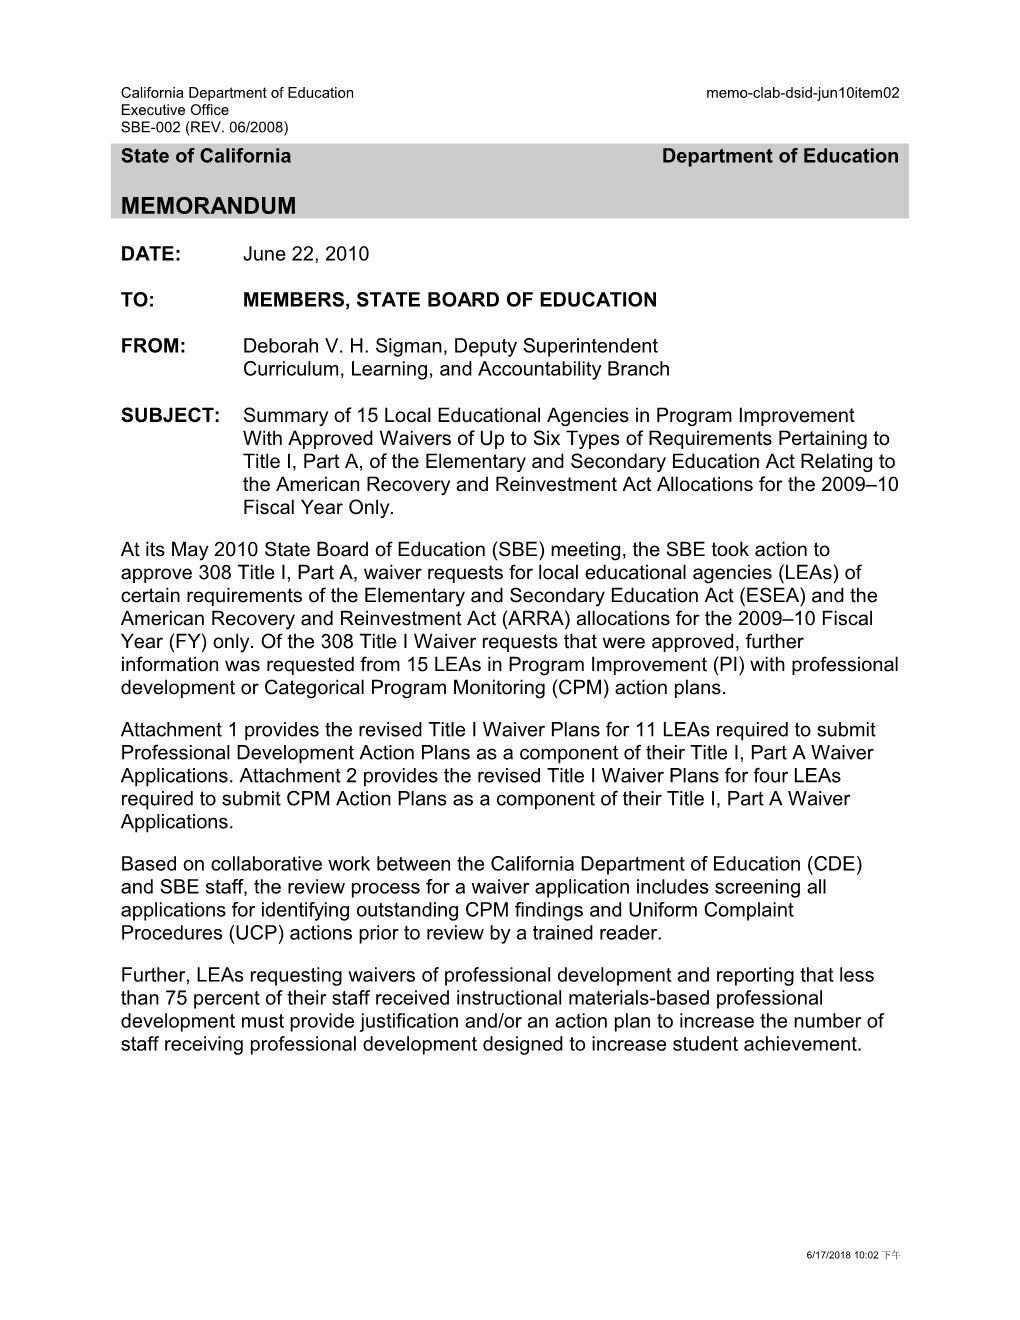 June 2010 Memorandum Item 15 - Information Memorandum (CA State Board of Education)